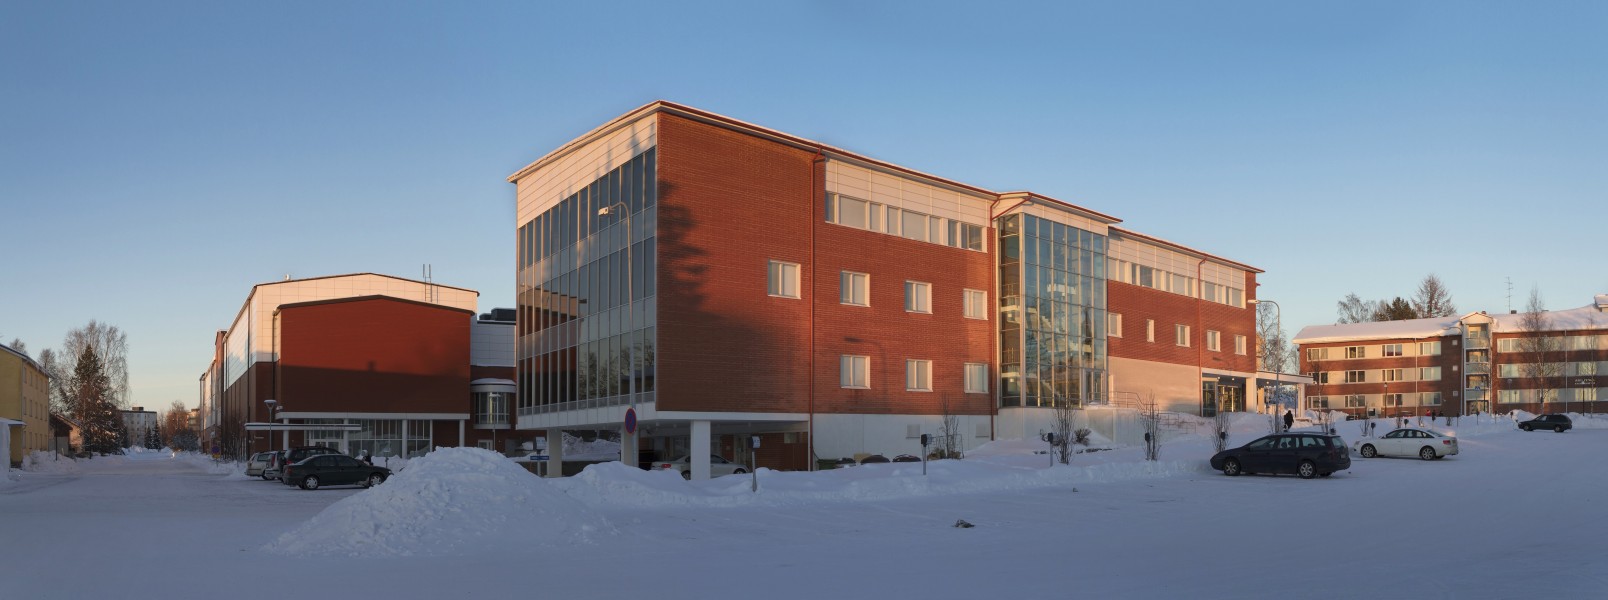 Minerva building in Suensaari, Tornio in 2013 February